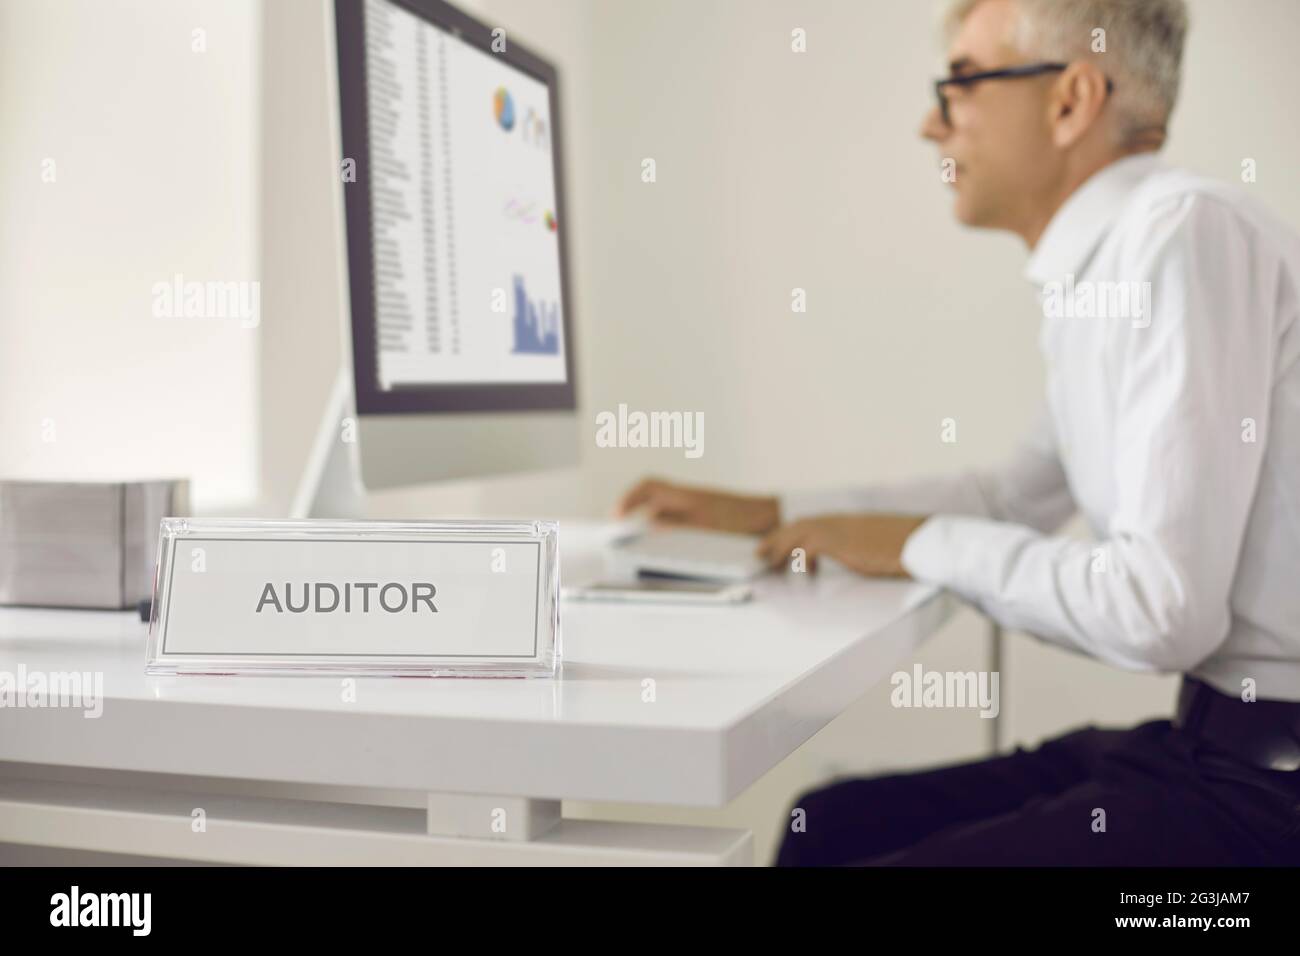 Plaque signalétique qui lit L'AUDITEUR avec un homme senior travaillant sur un ordinateur en arrière-plan Banque D'Images